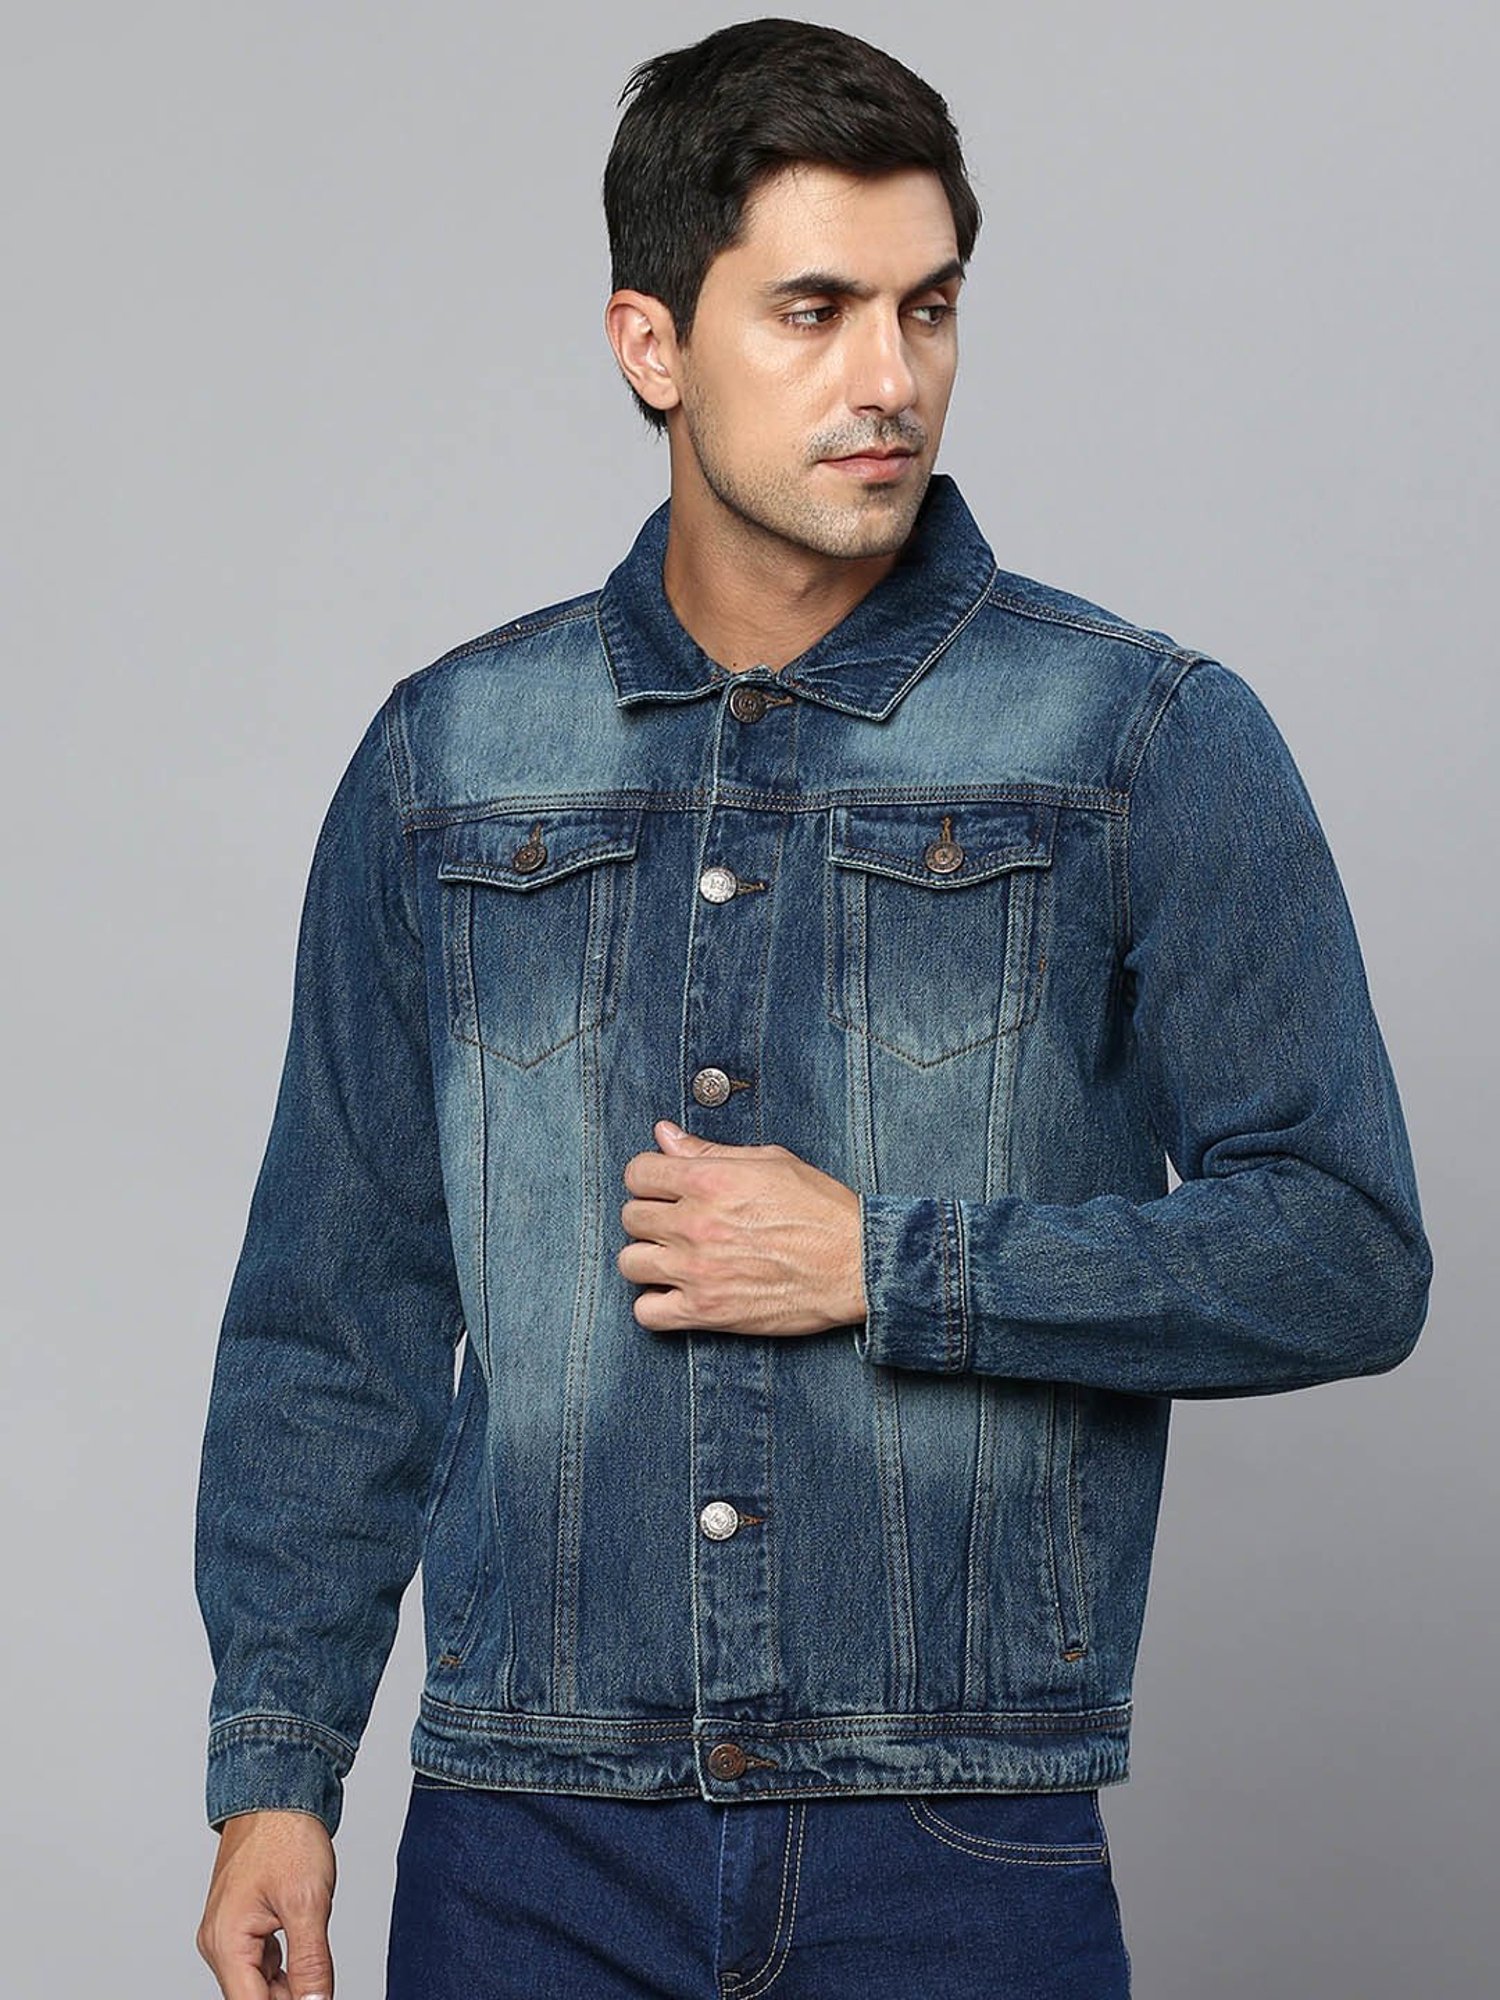 Polo Ralph Lauren stand-up Collar Shirt Jacket - Farfetch